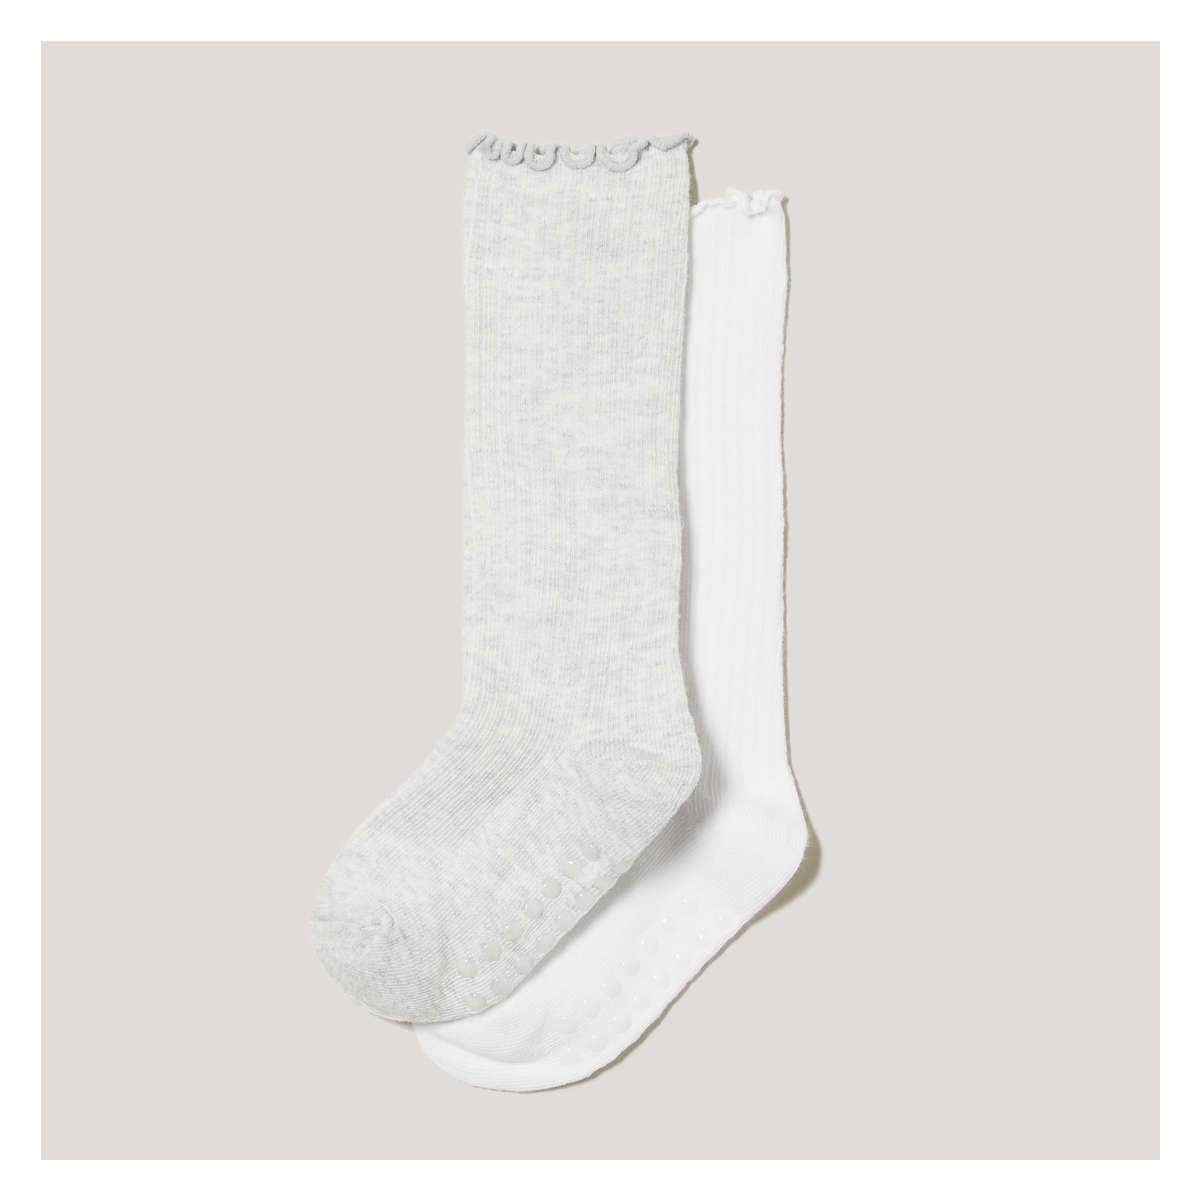 Toddler Girls' 2 Pack Knee-High Socks in White from Joe Fresh